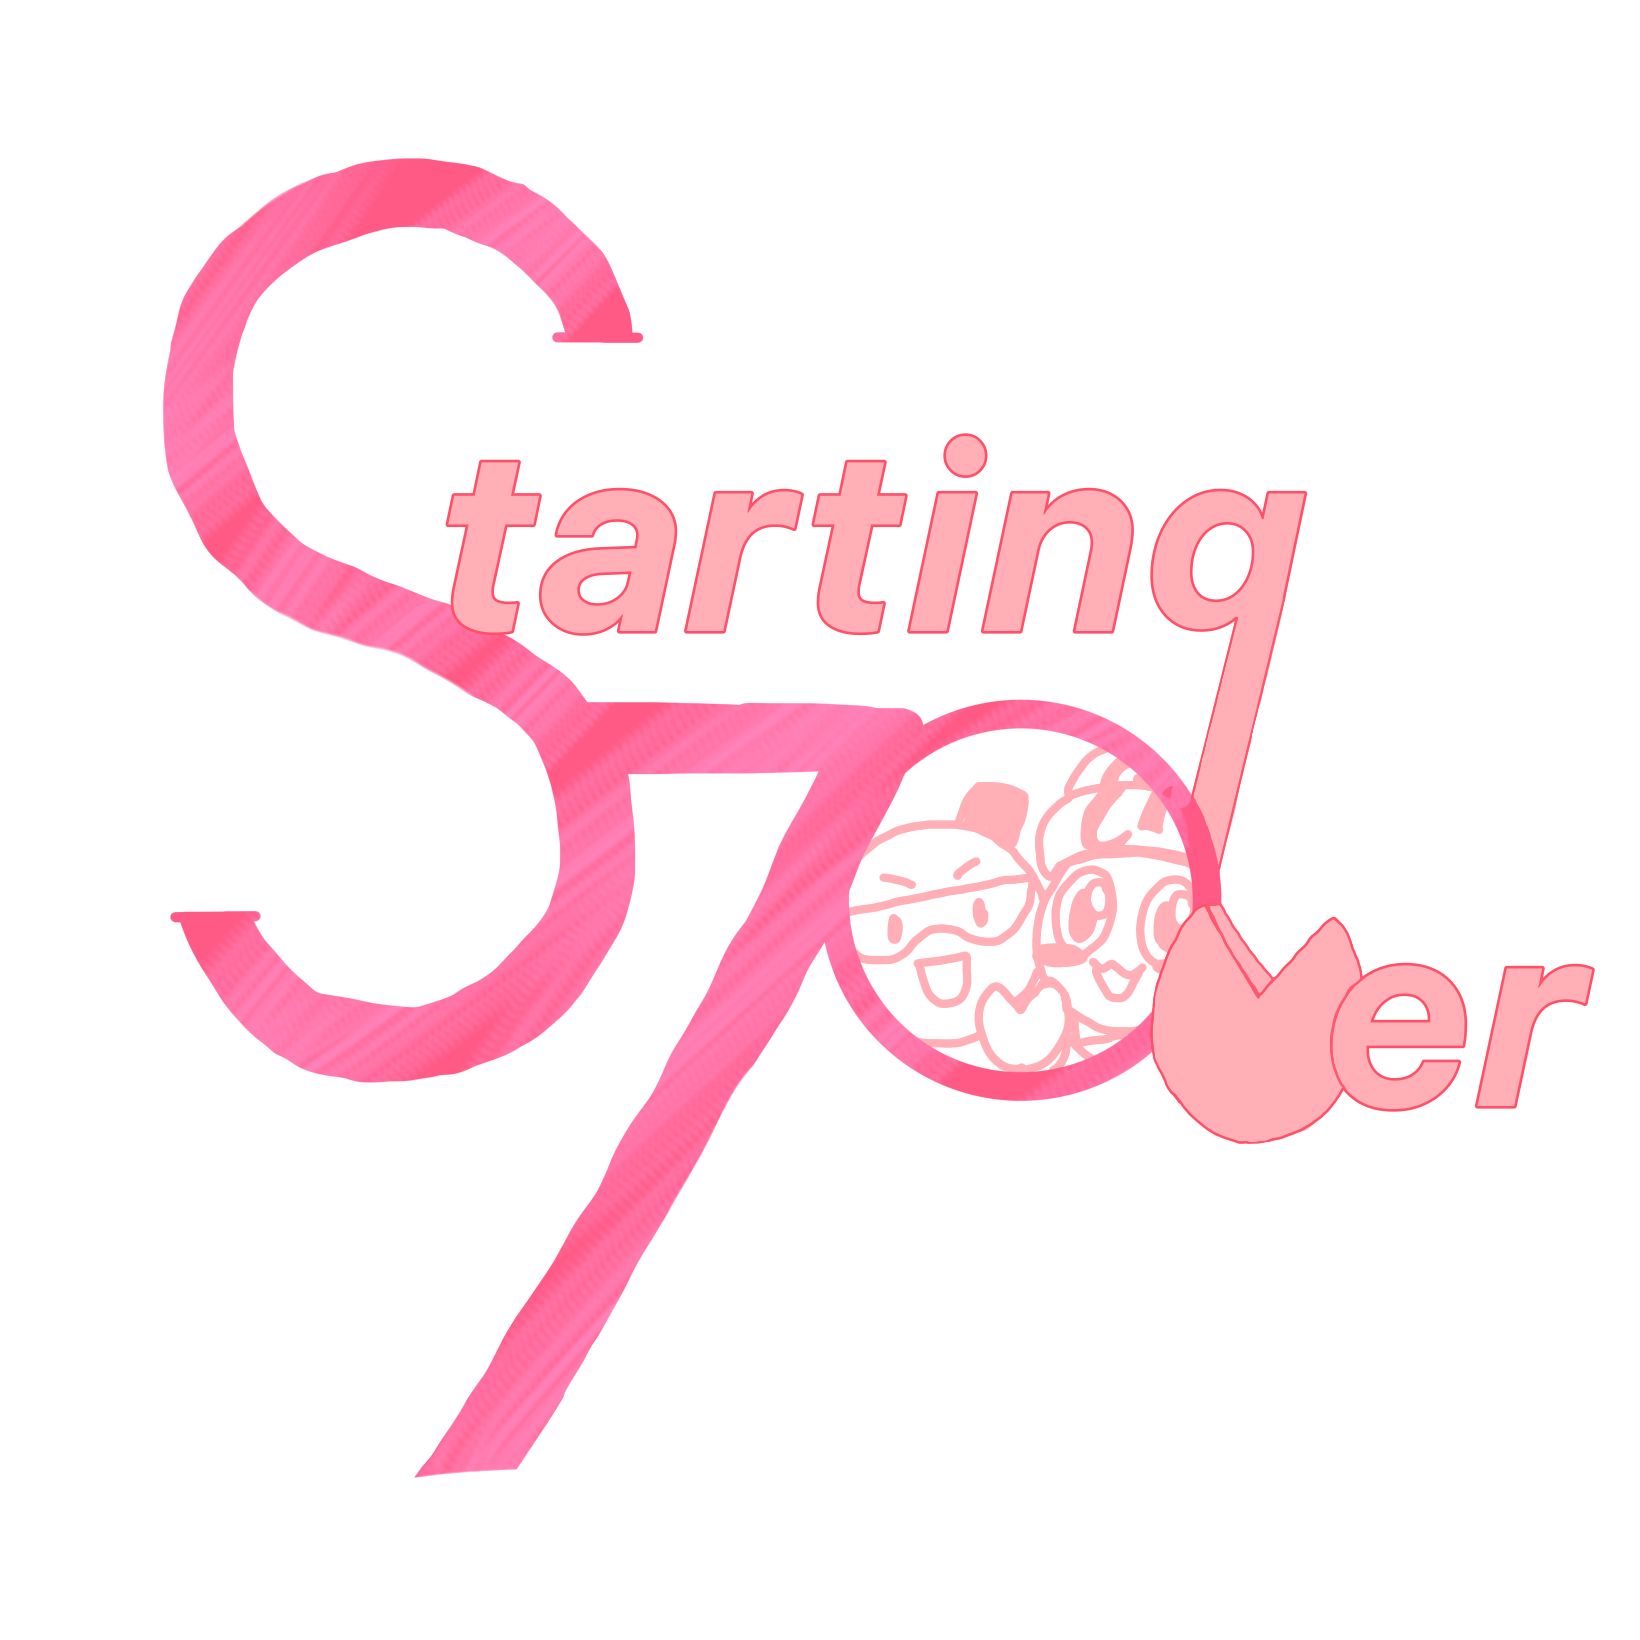 「Starting Over」この言葉をモチーフにして70周年のロゴマークを作成しました。